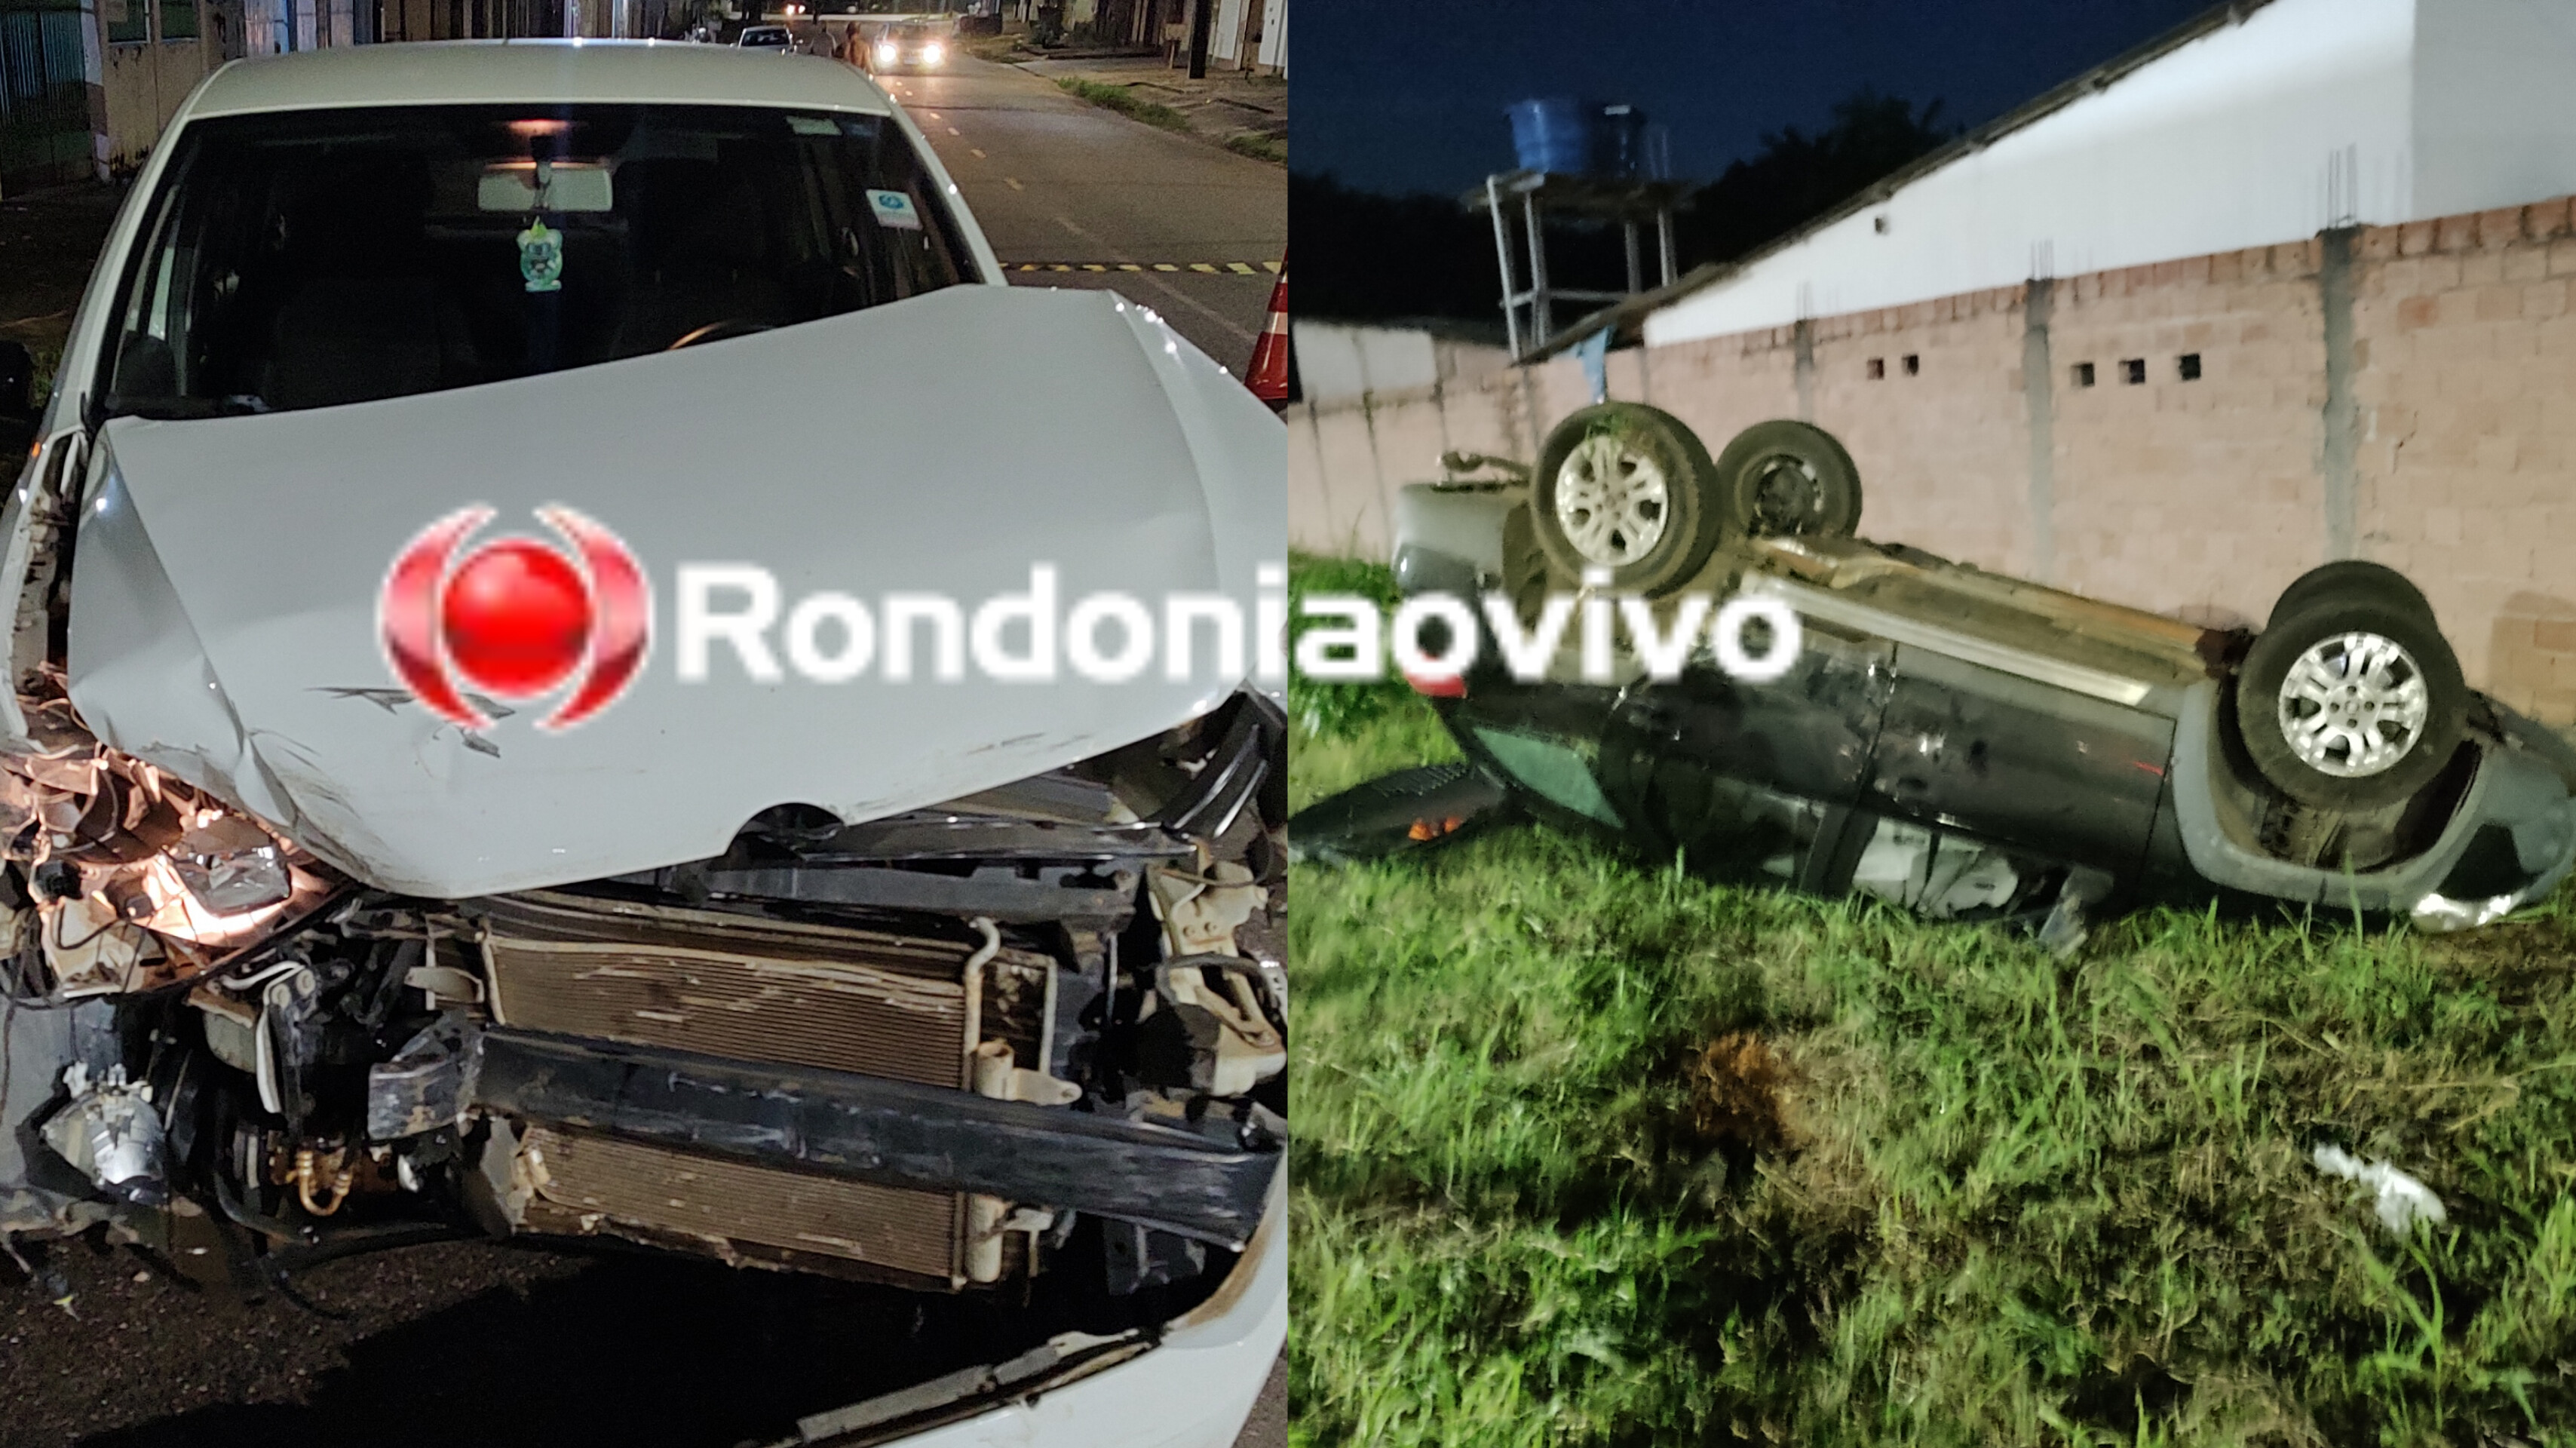 ONDA DE ACIDENTES: Grave capotamento é registrado no Centro de Porto Velho após motorista avançar